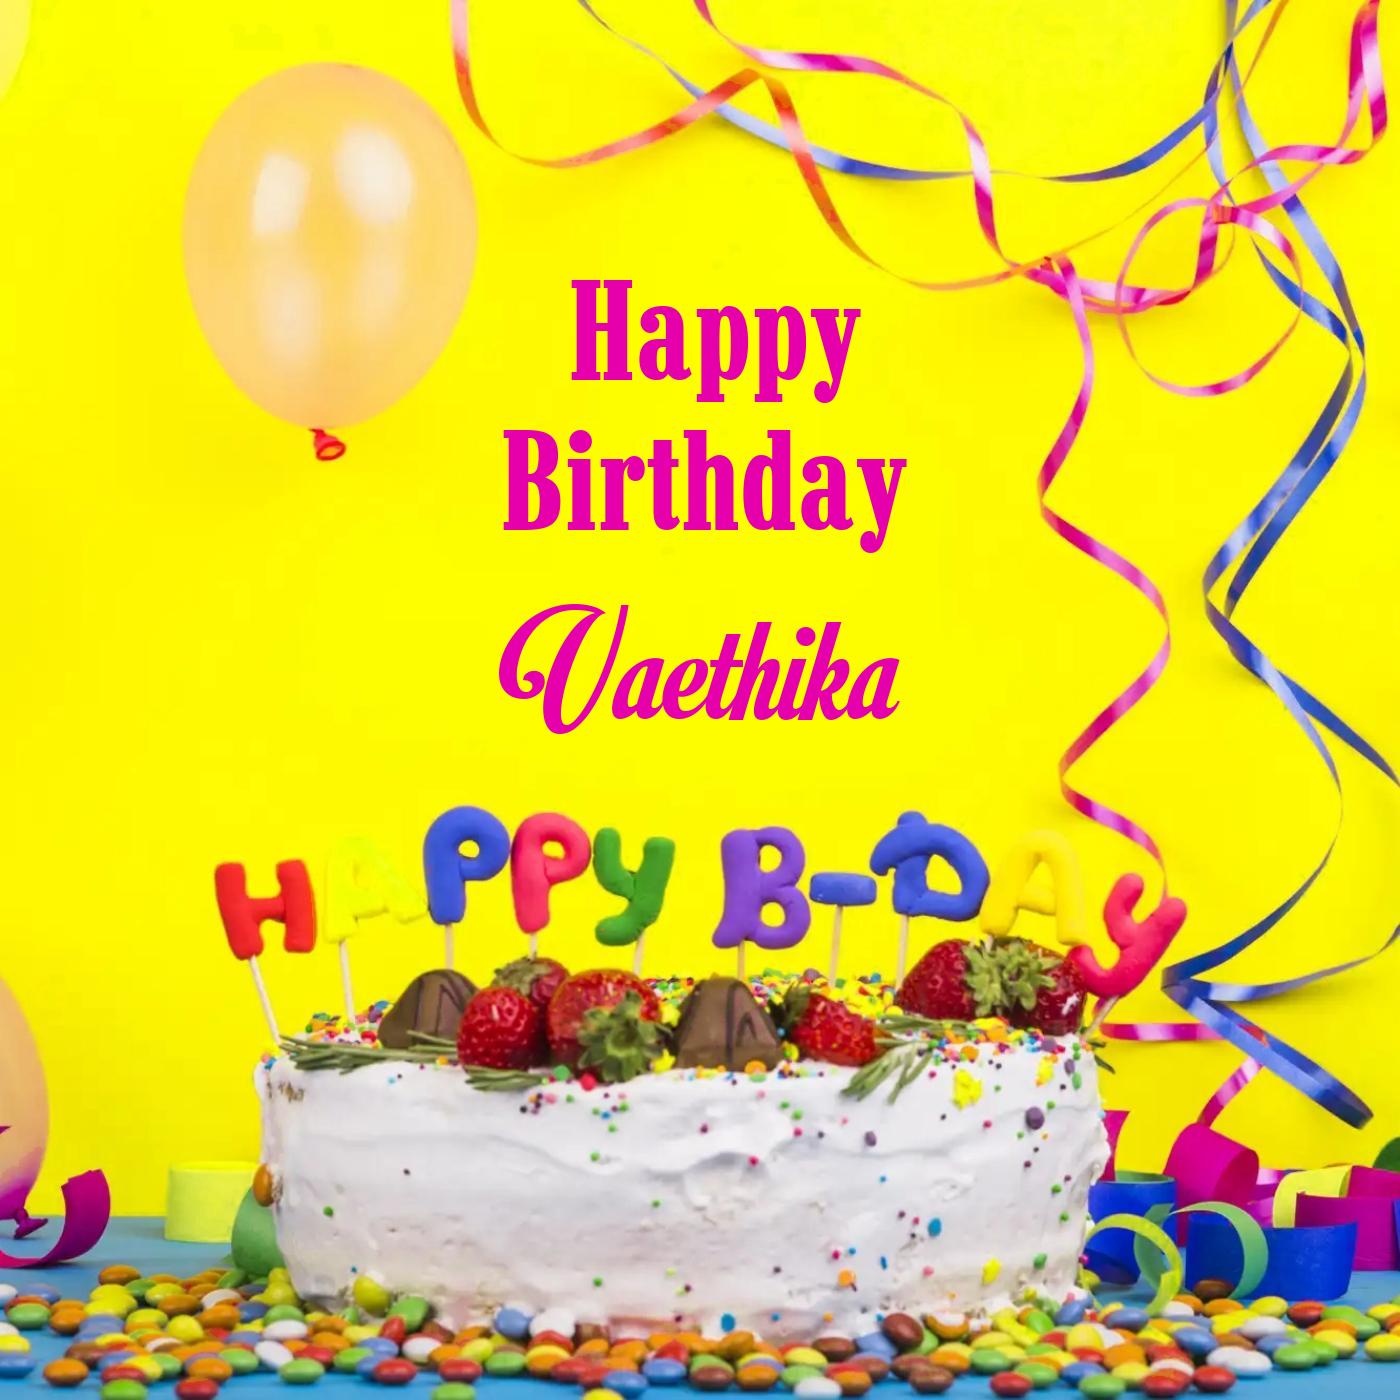 Happy Birthday Vaethika Cake Decoration Card